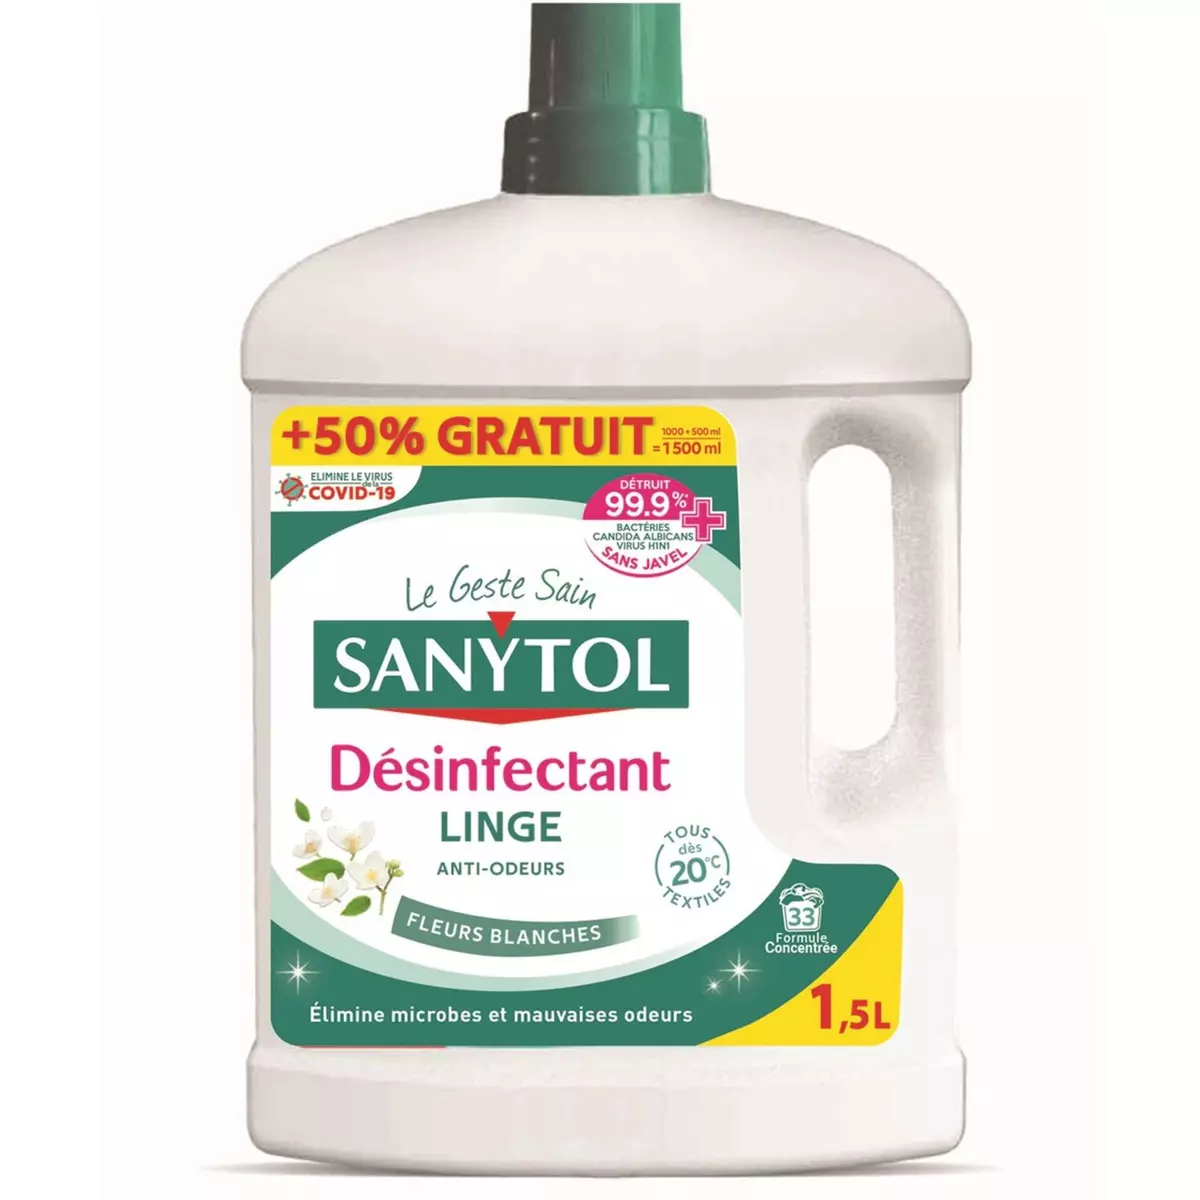 SANYTOL Désinfectant linge anti-odeurs fleurs blanches 1l+50% offert